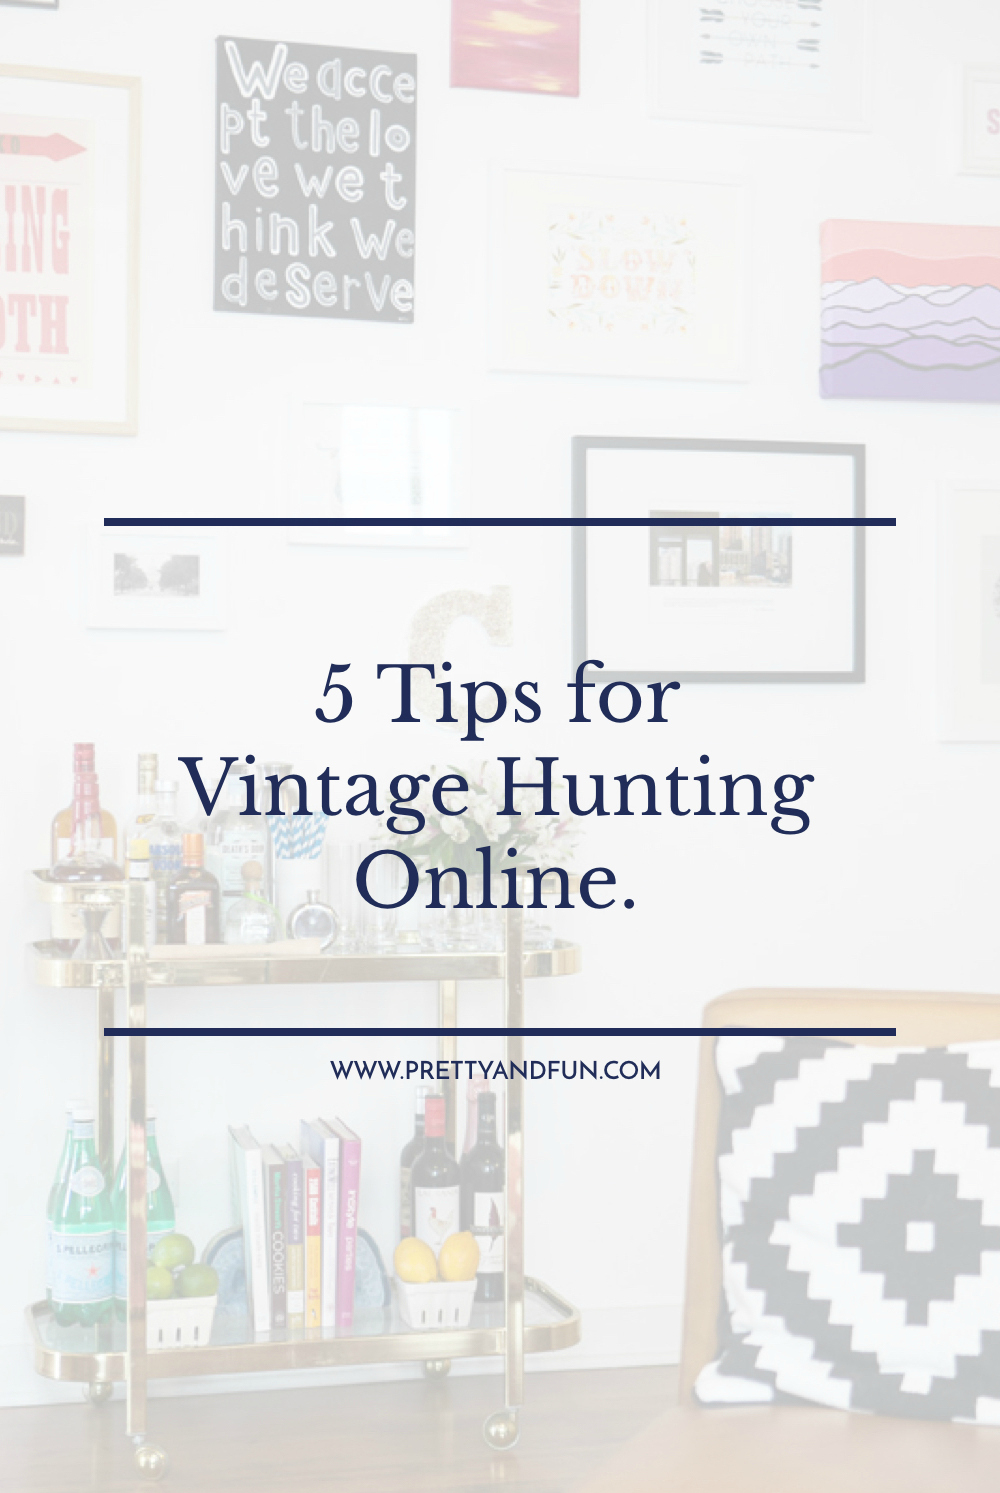 5 Tips for Vintage Hunting Online.